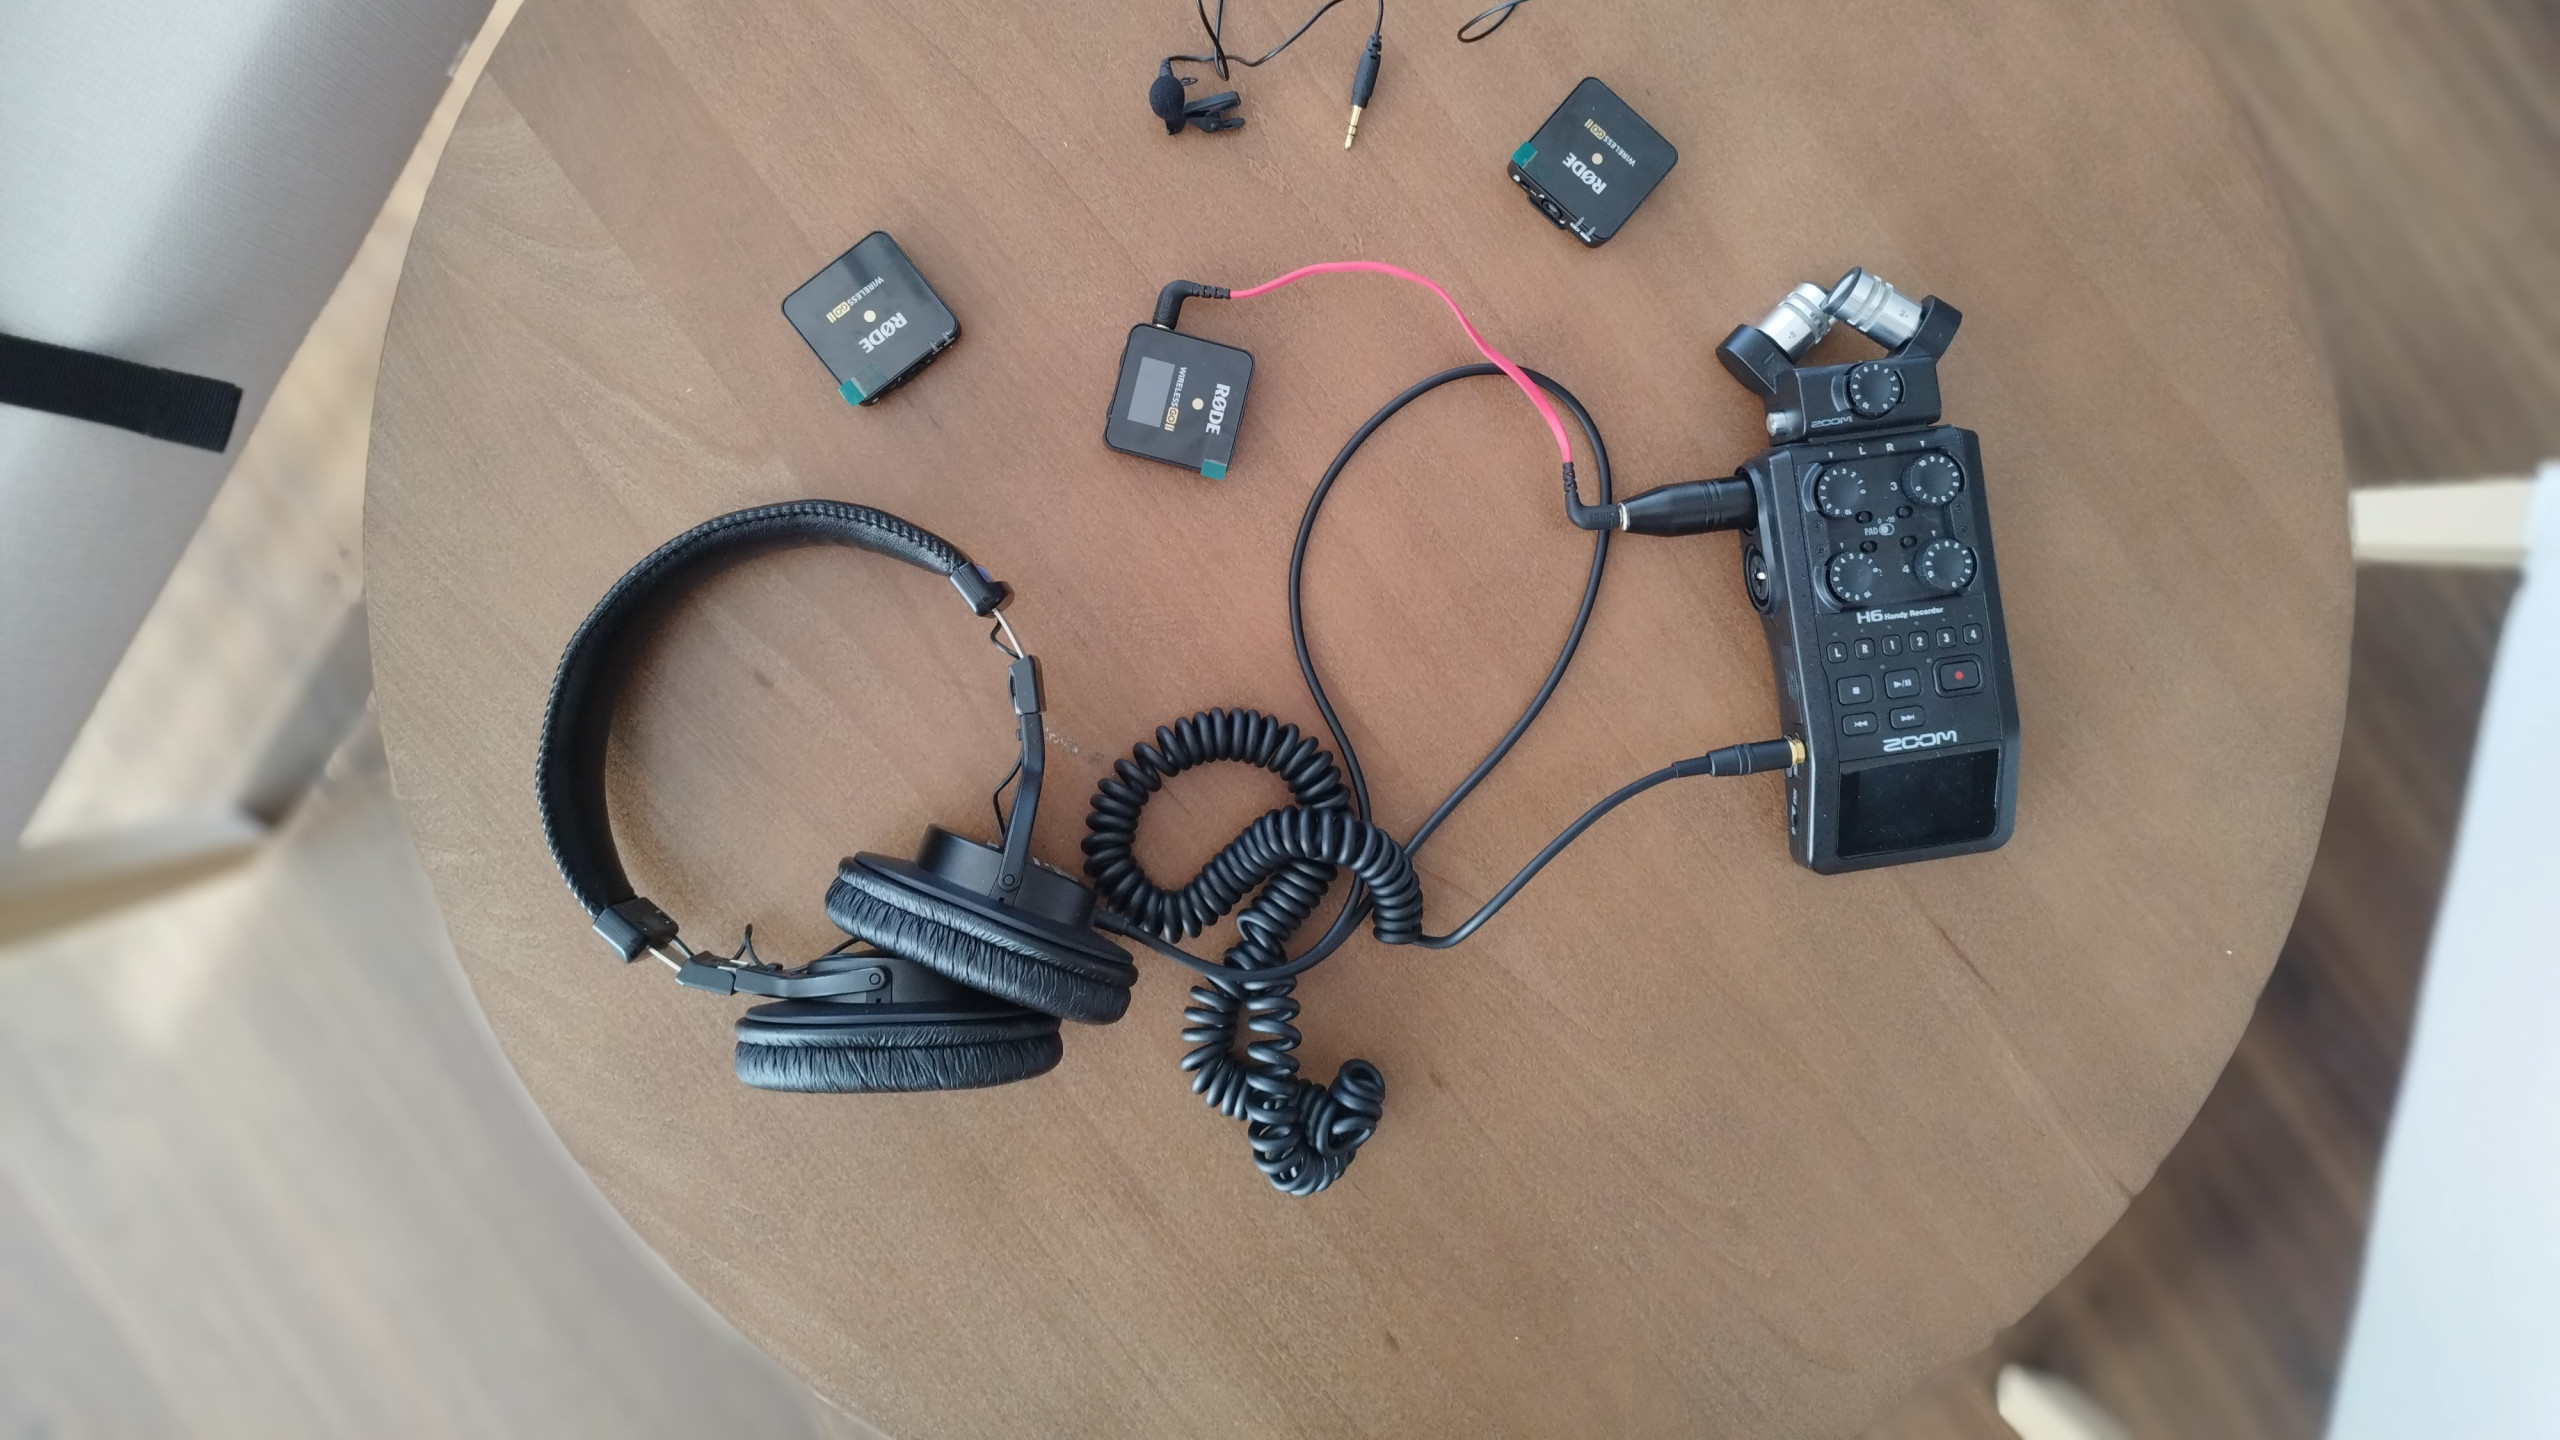 Podcast-Equipment auf Tisch liegend von oben fotografiert.